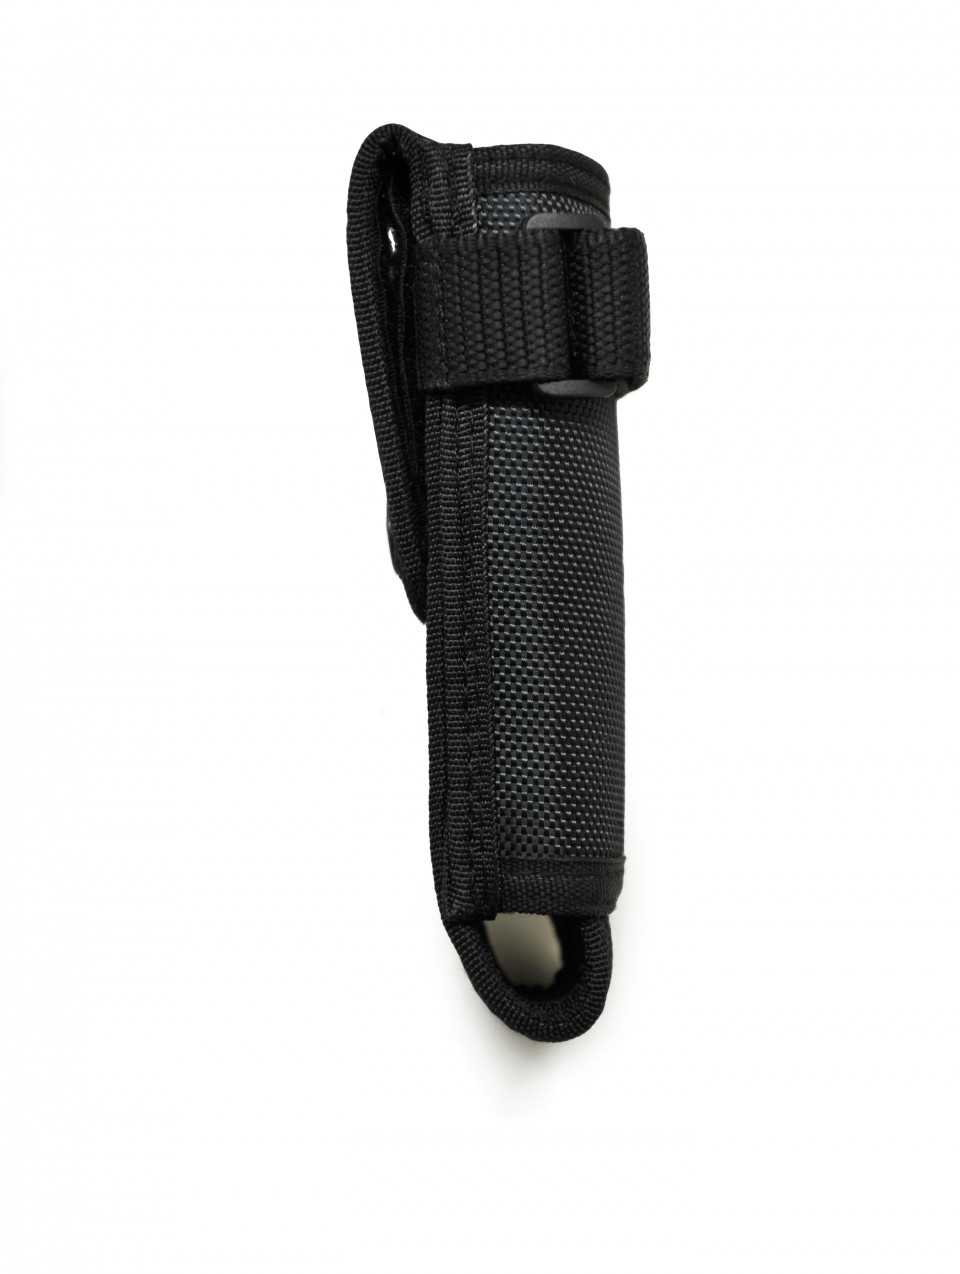 Unisex Baton Pouch(Compatible with Duty Belt)